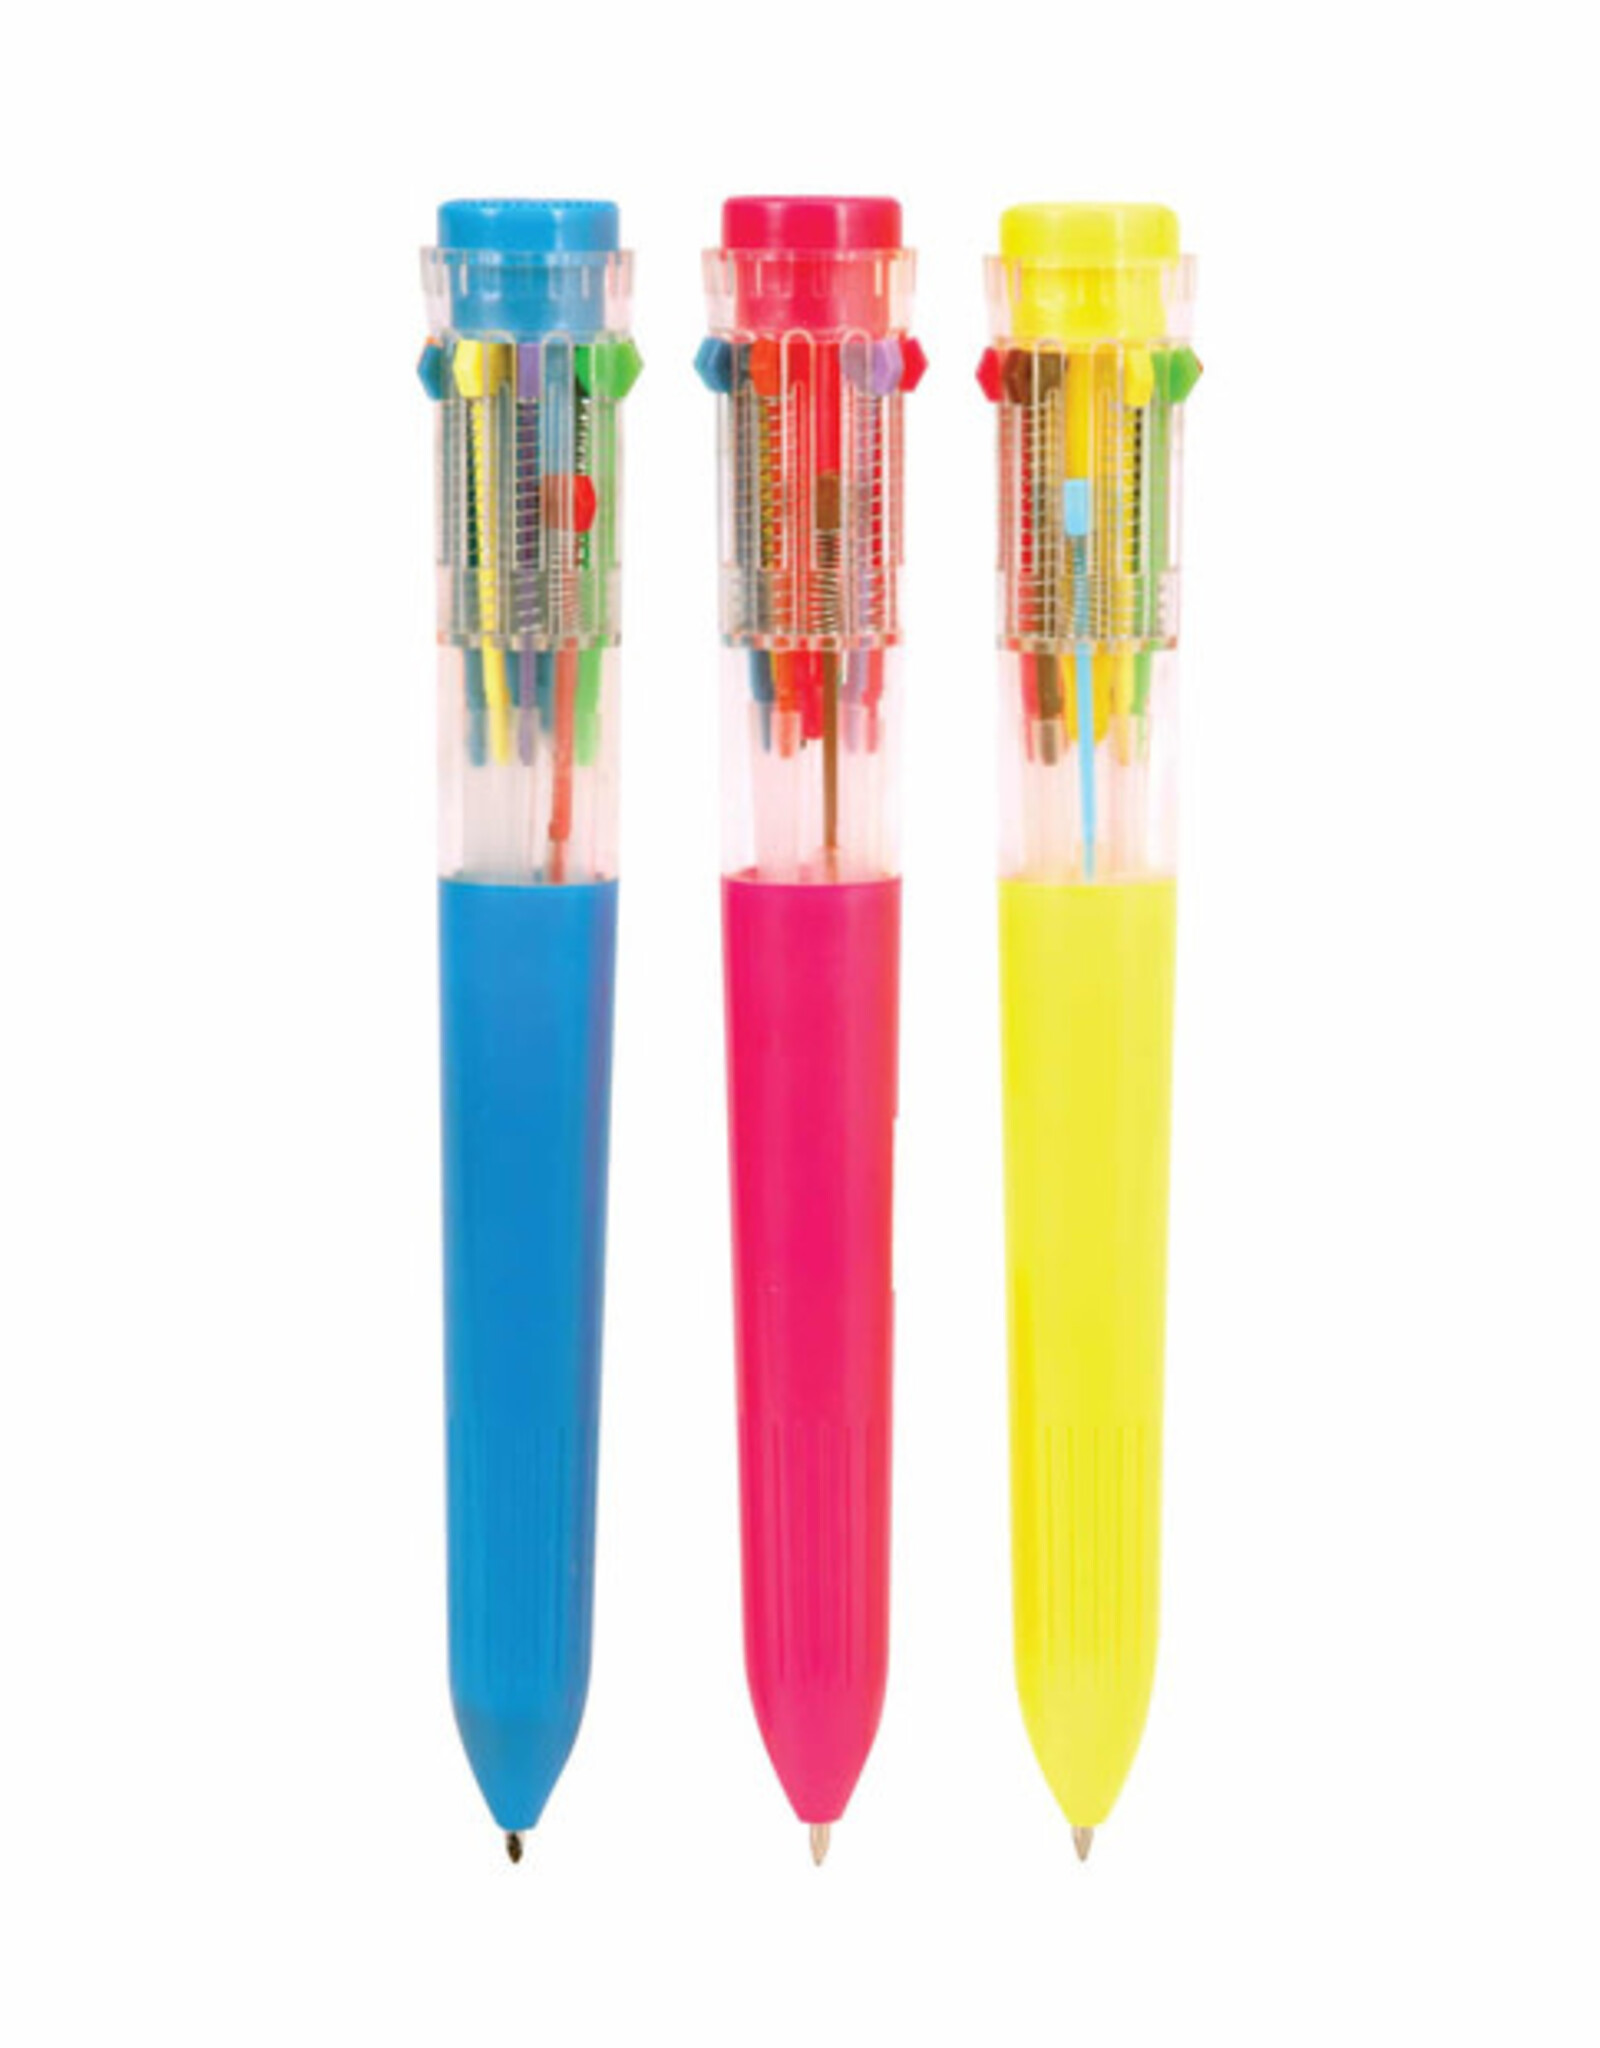 Ten Color Pen